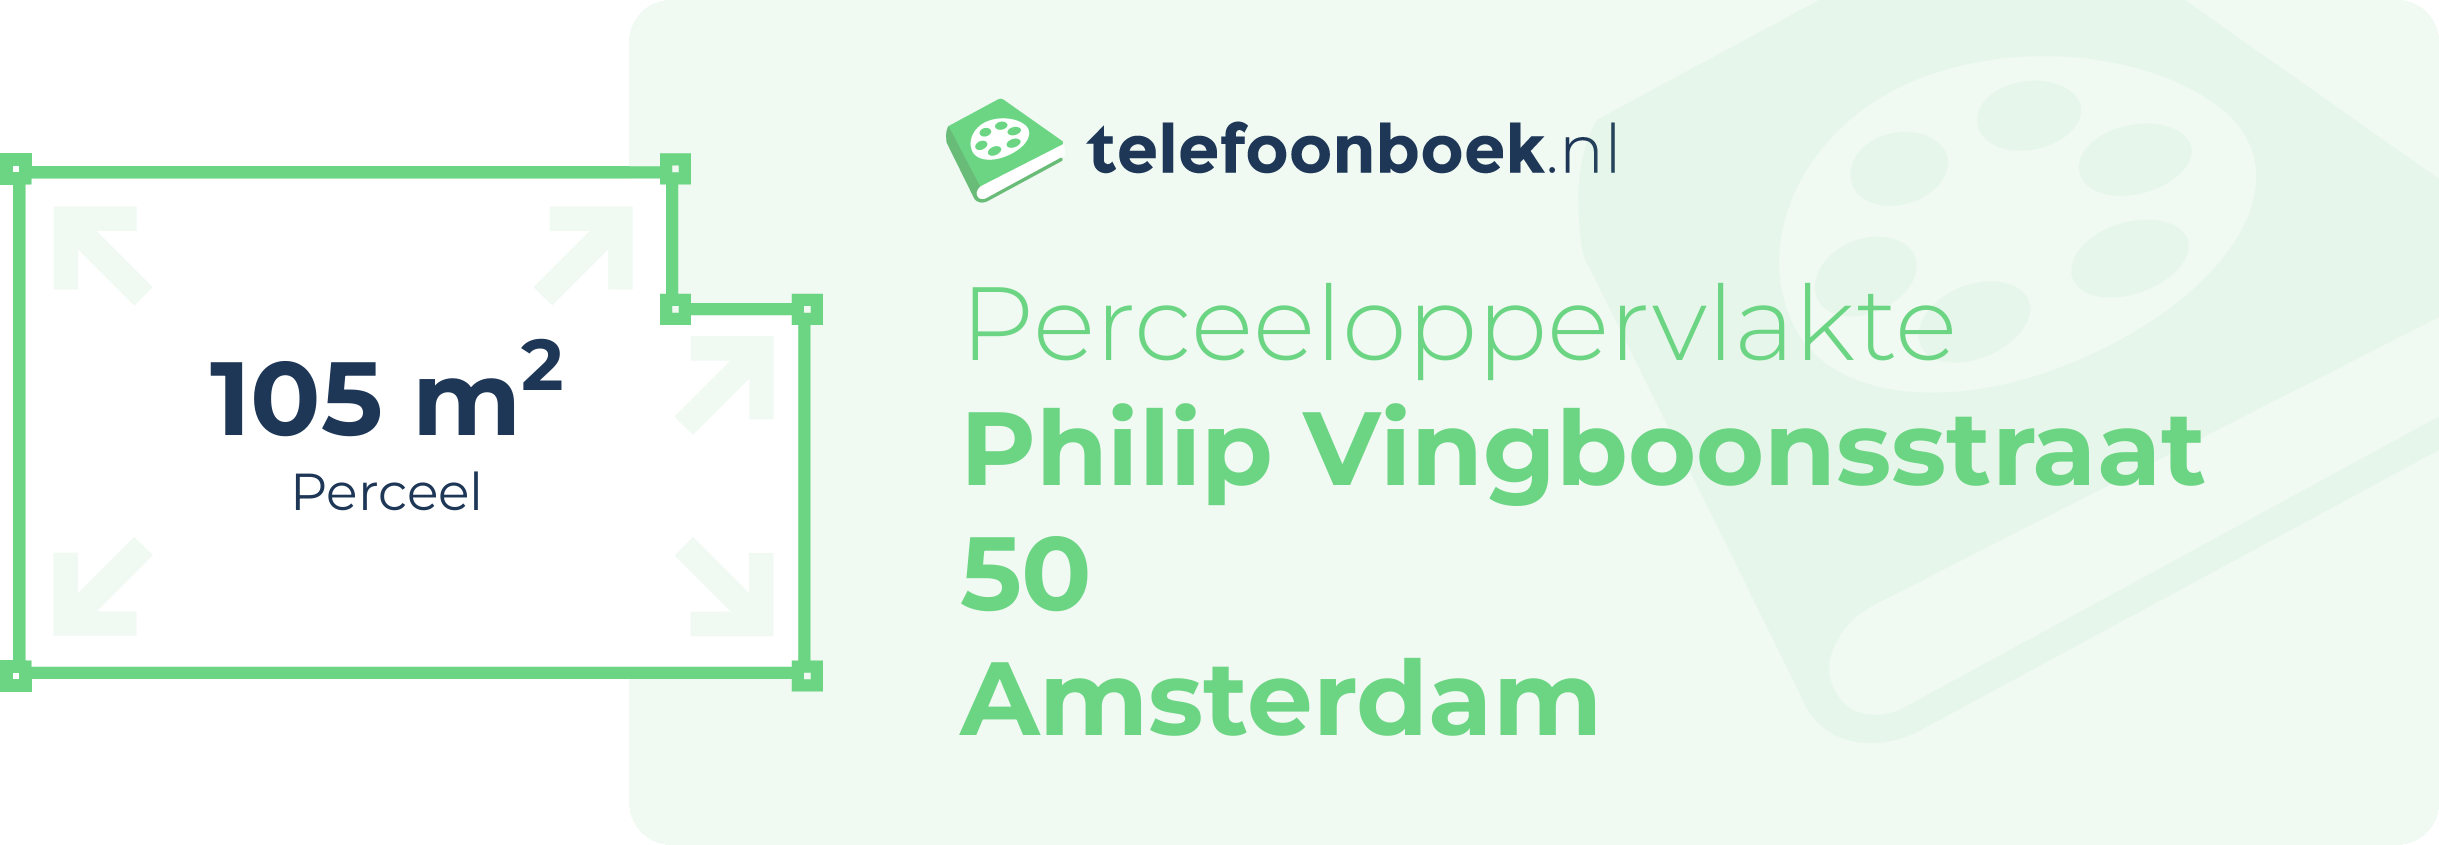 Perceeloppervlakte Philip Vingboonsstraat 50 Amsterdam